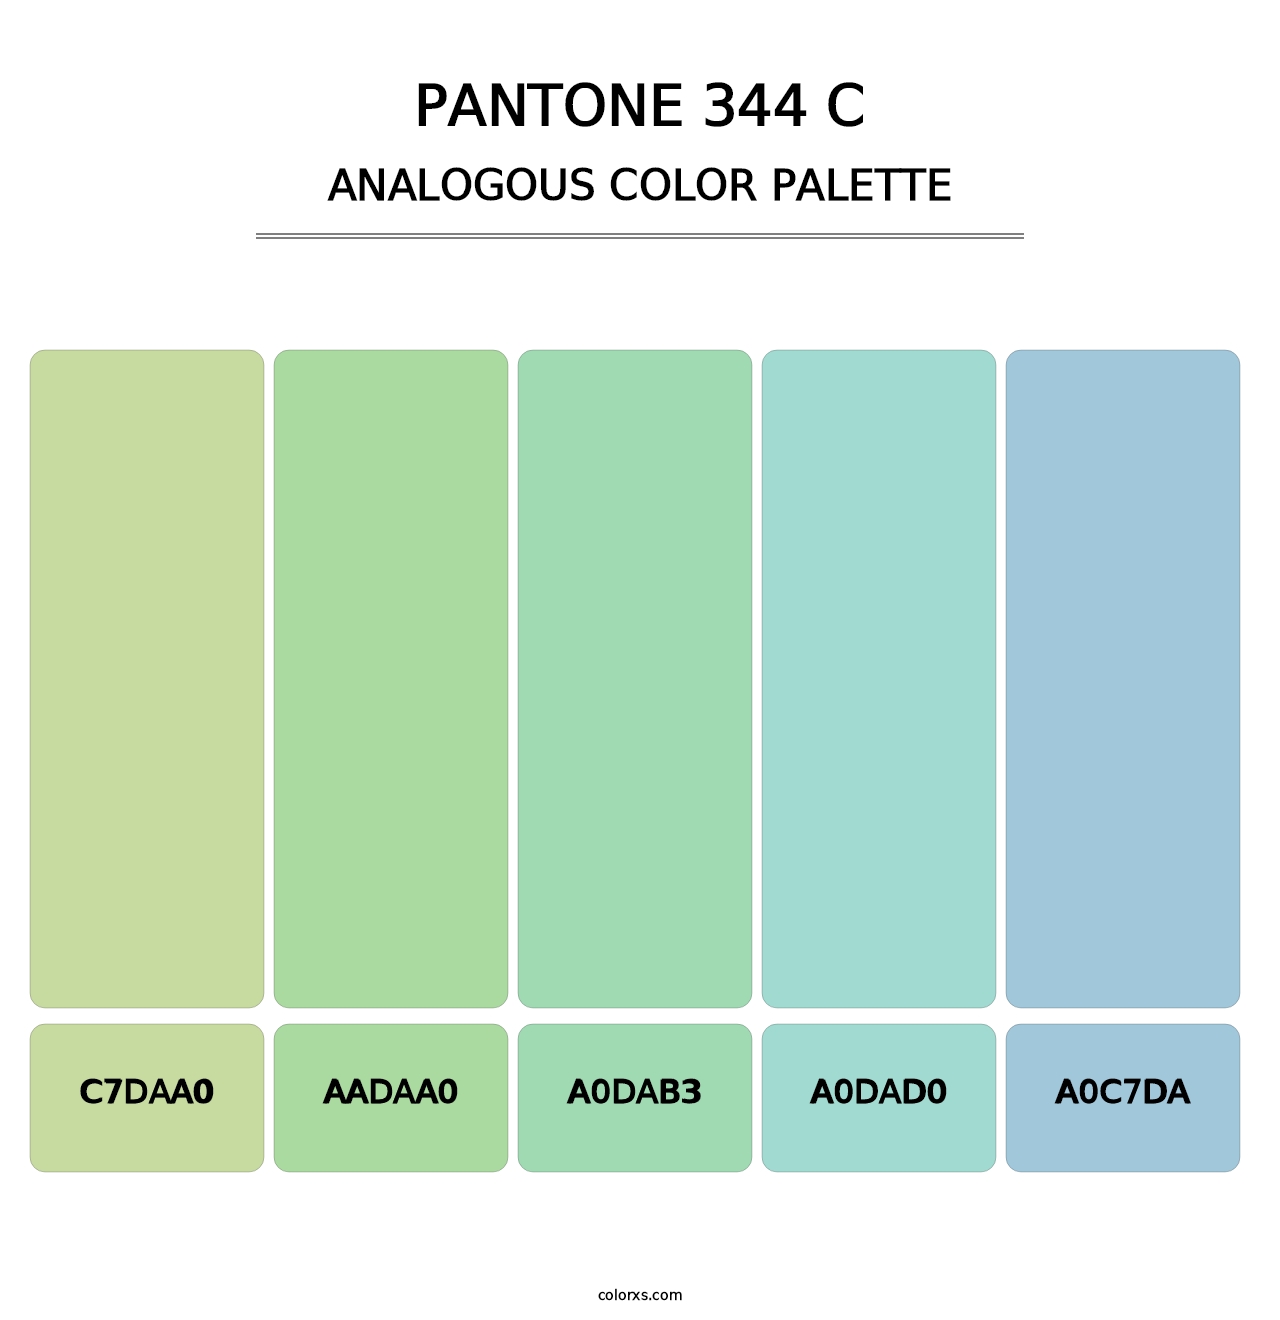 PANTONE 344 C - Analogous Color Palette